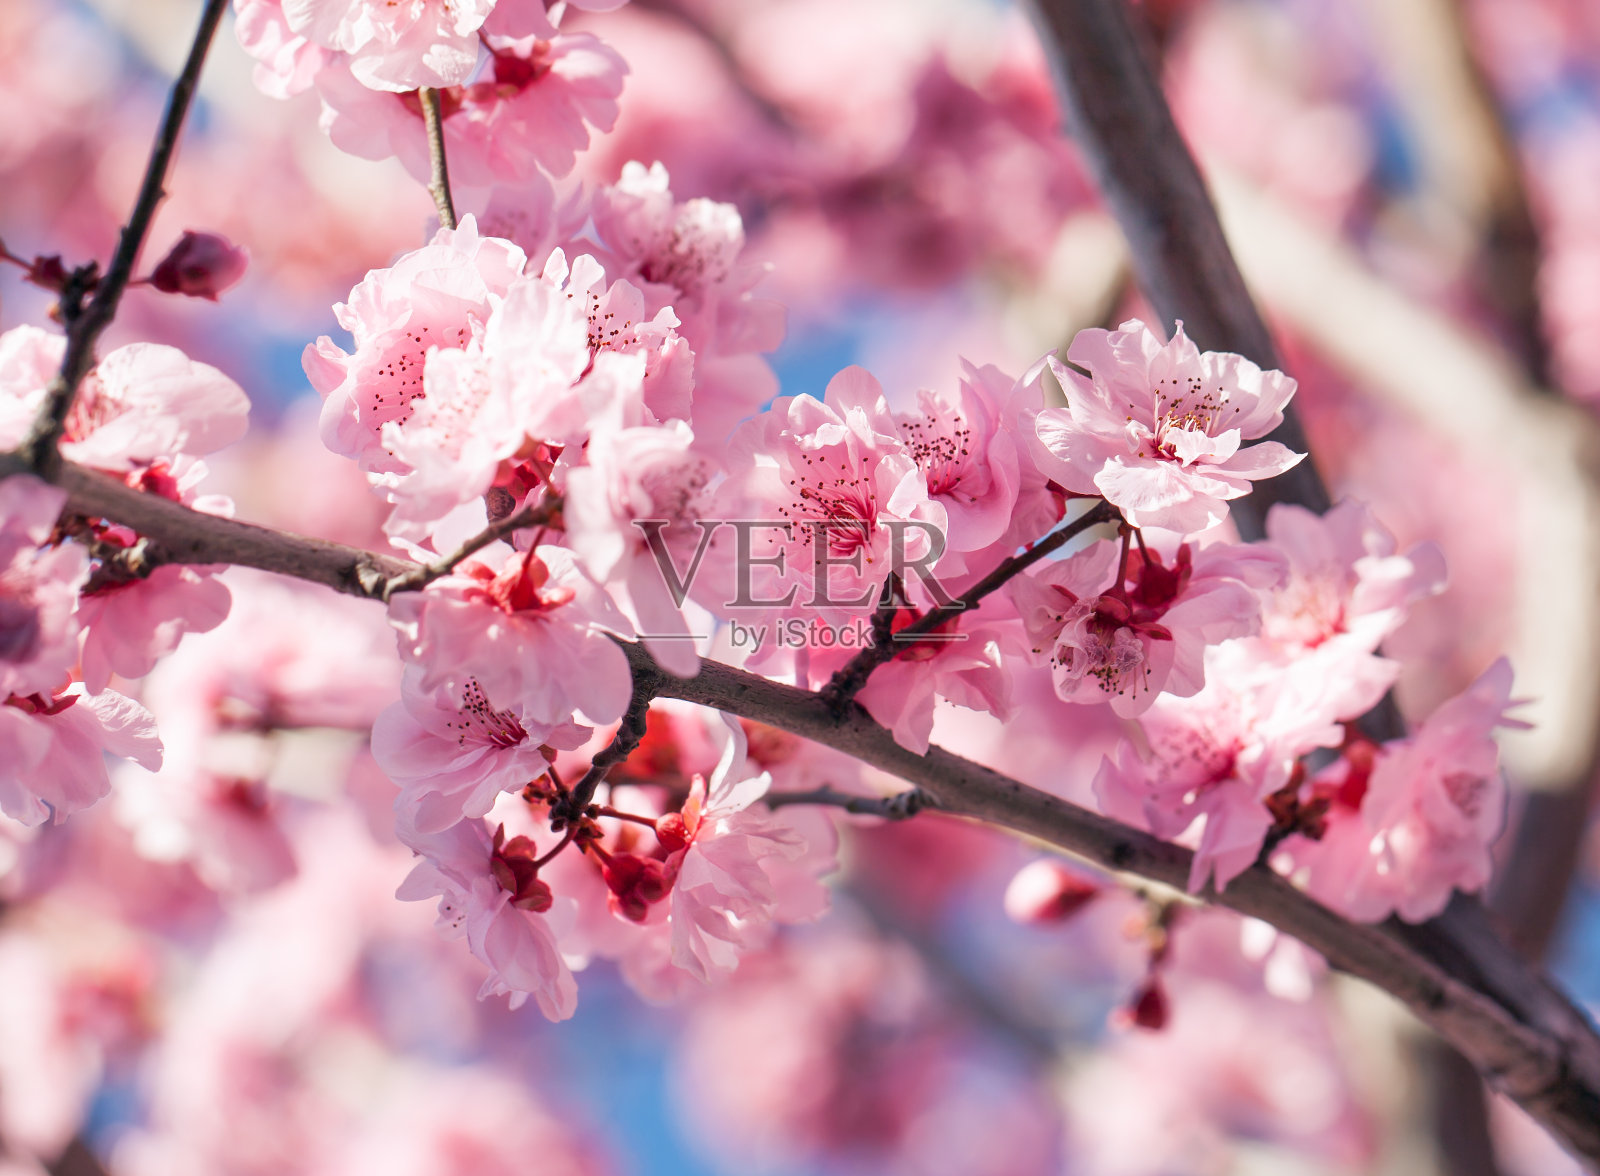 樱桃树blssom照片摄影图片